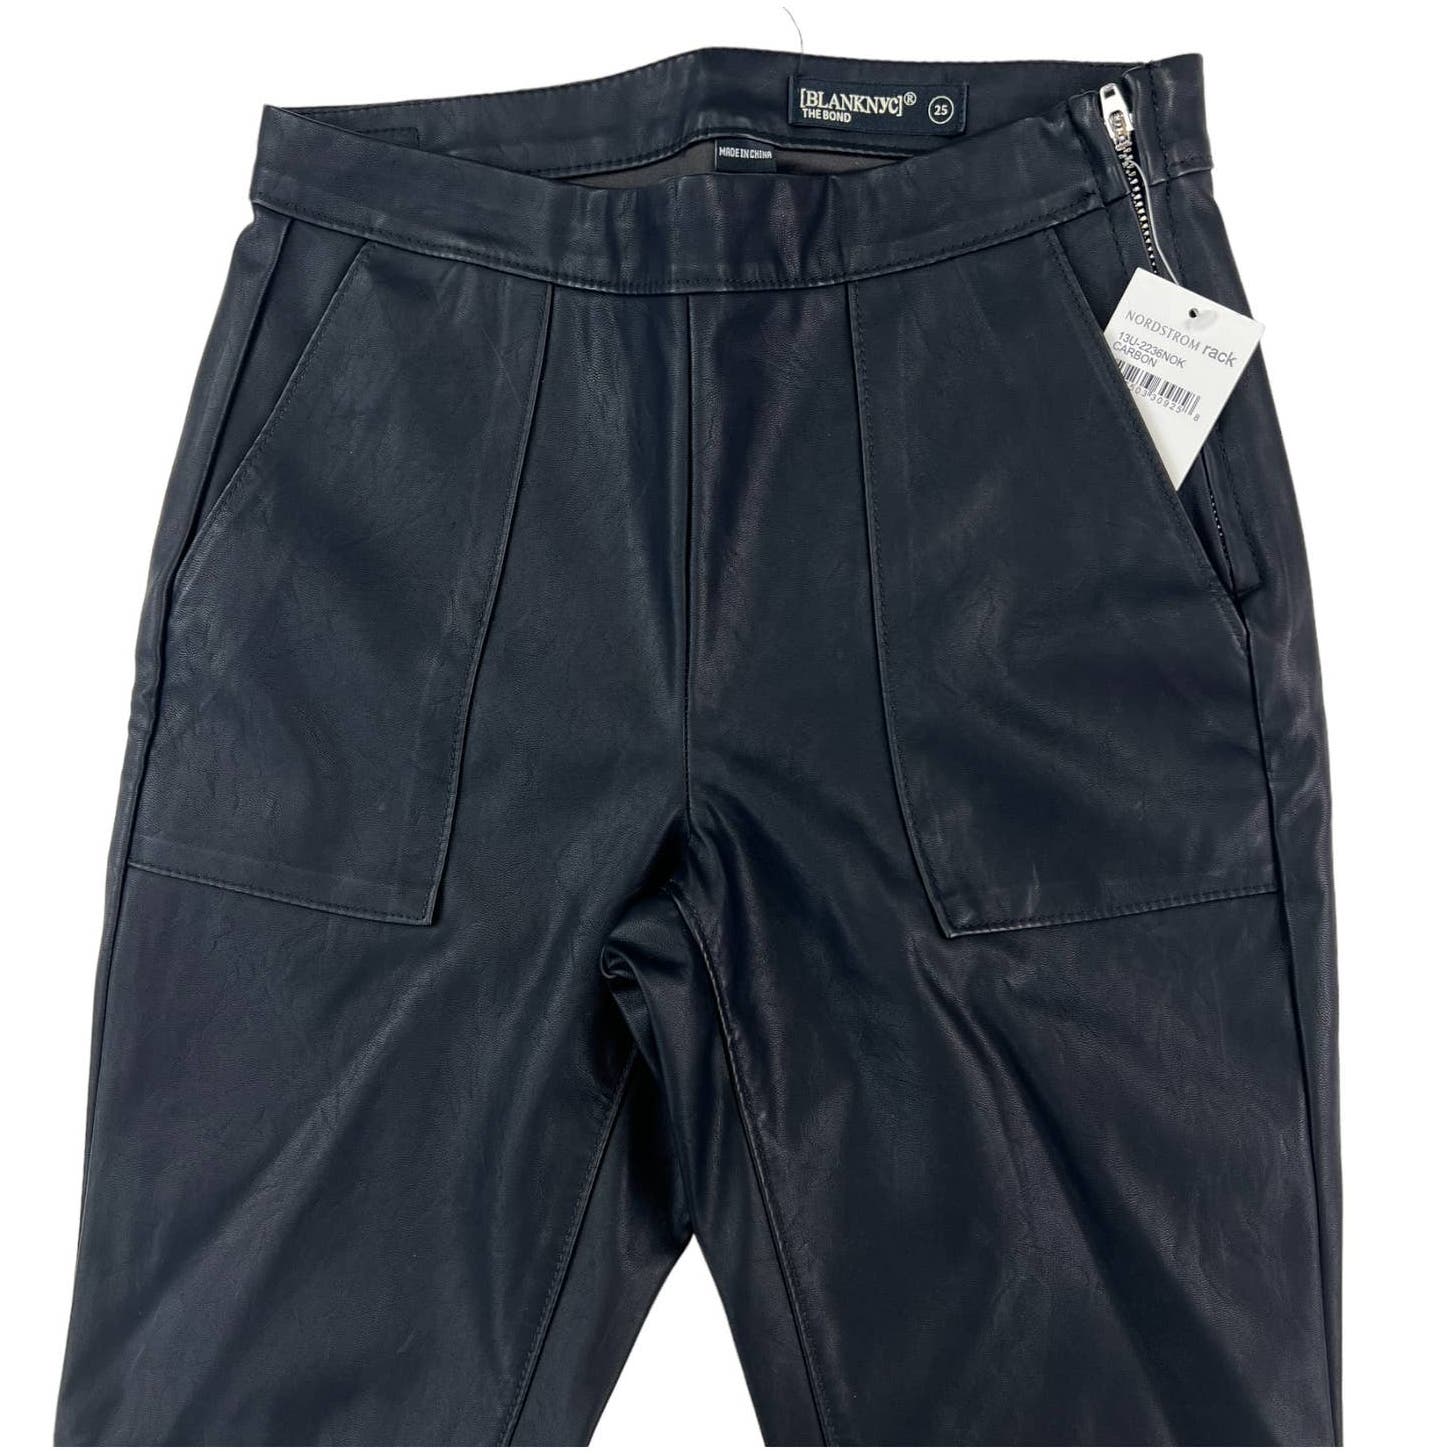 Blanknyc Women Black Slim Pants US 25 Faux Leather Leggins